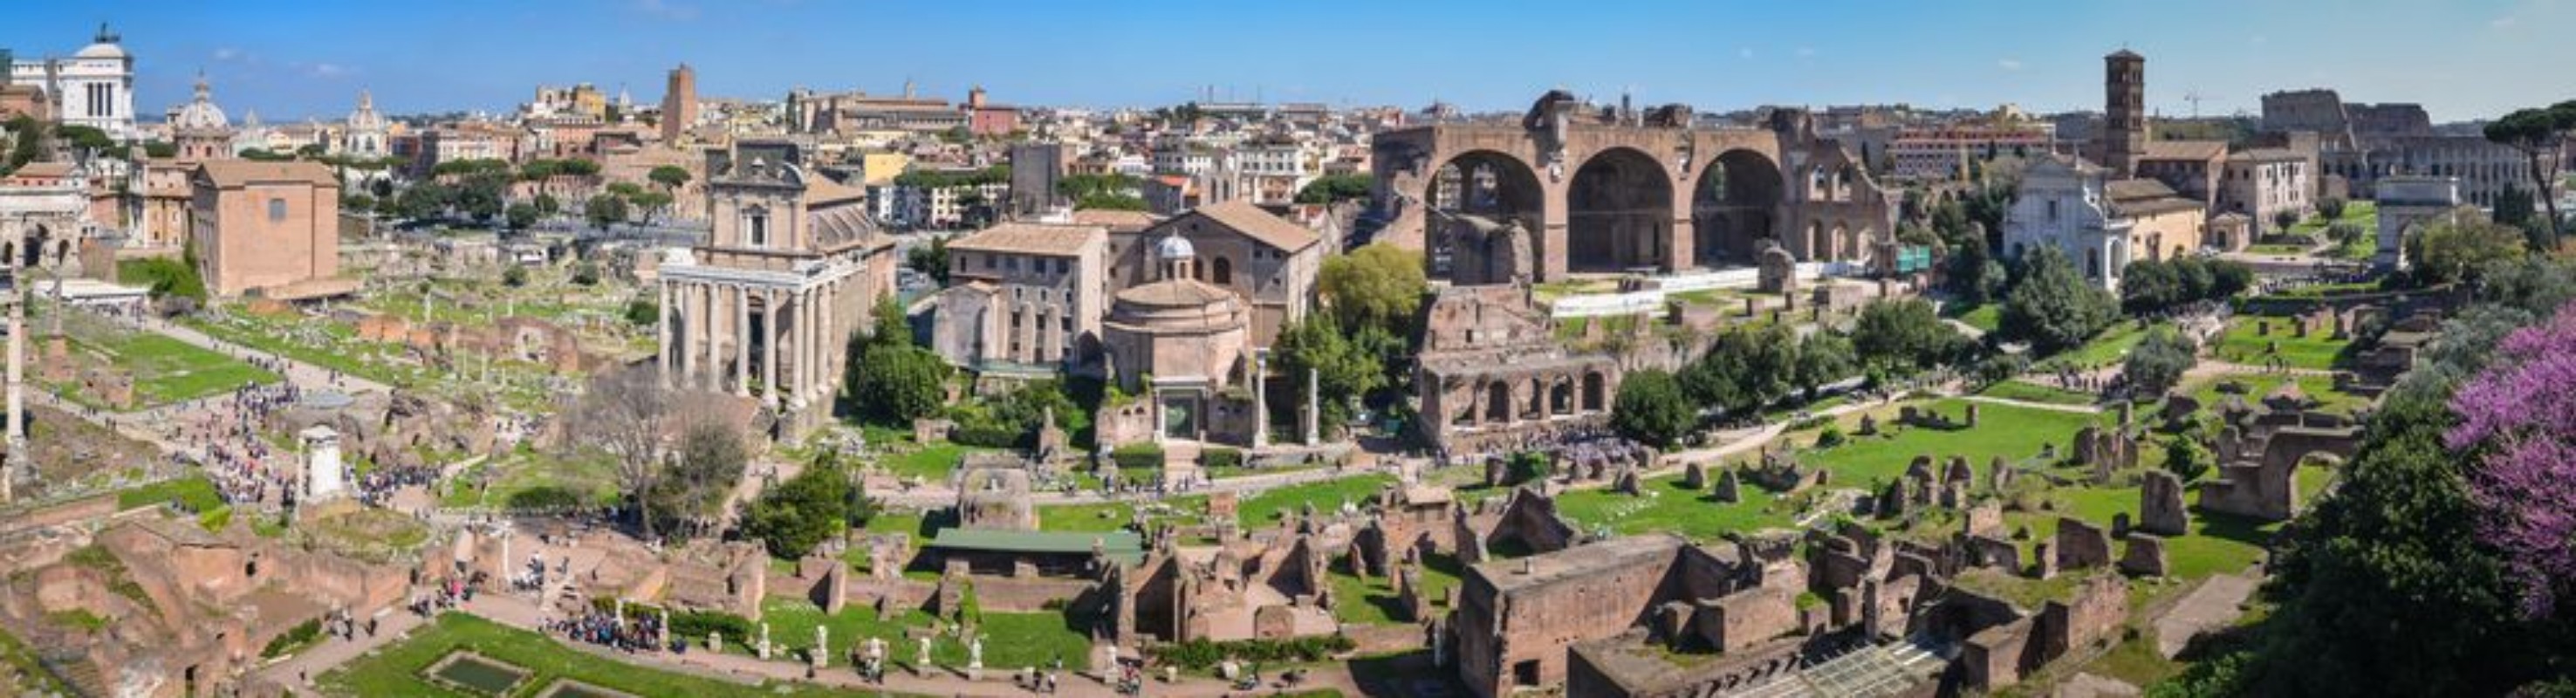 Image de Forum Romanum - panorama